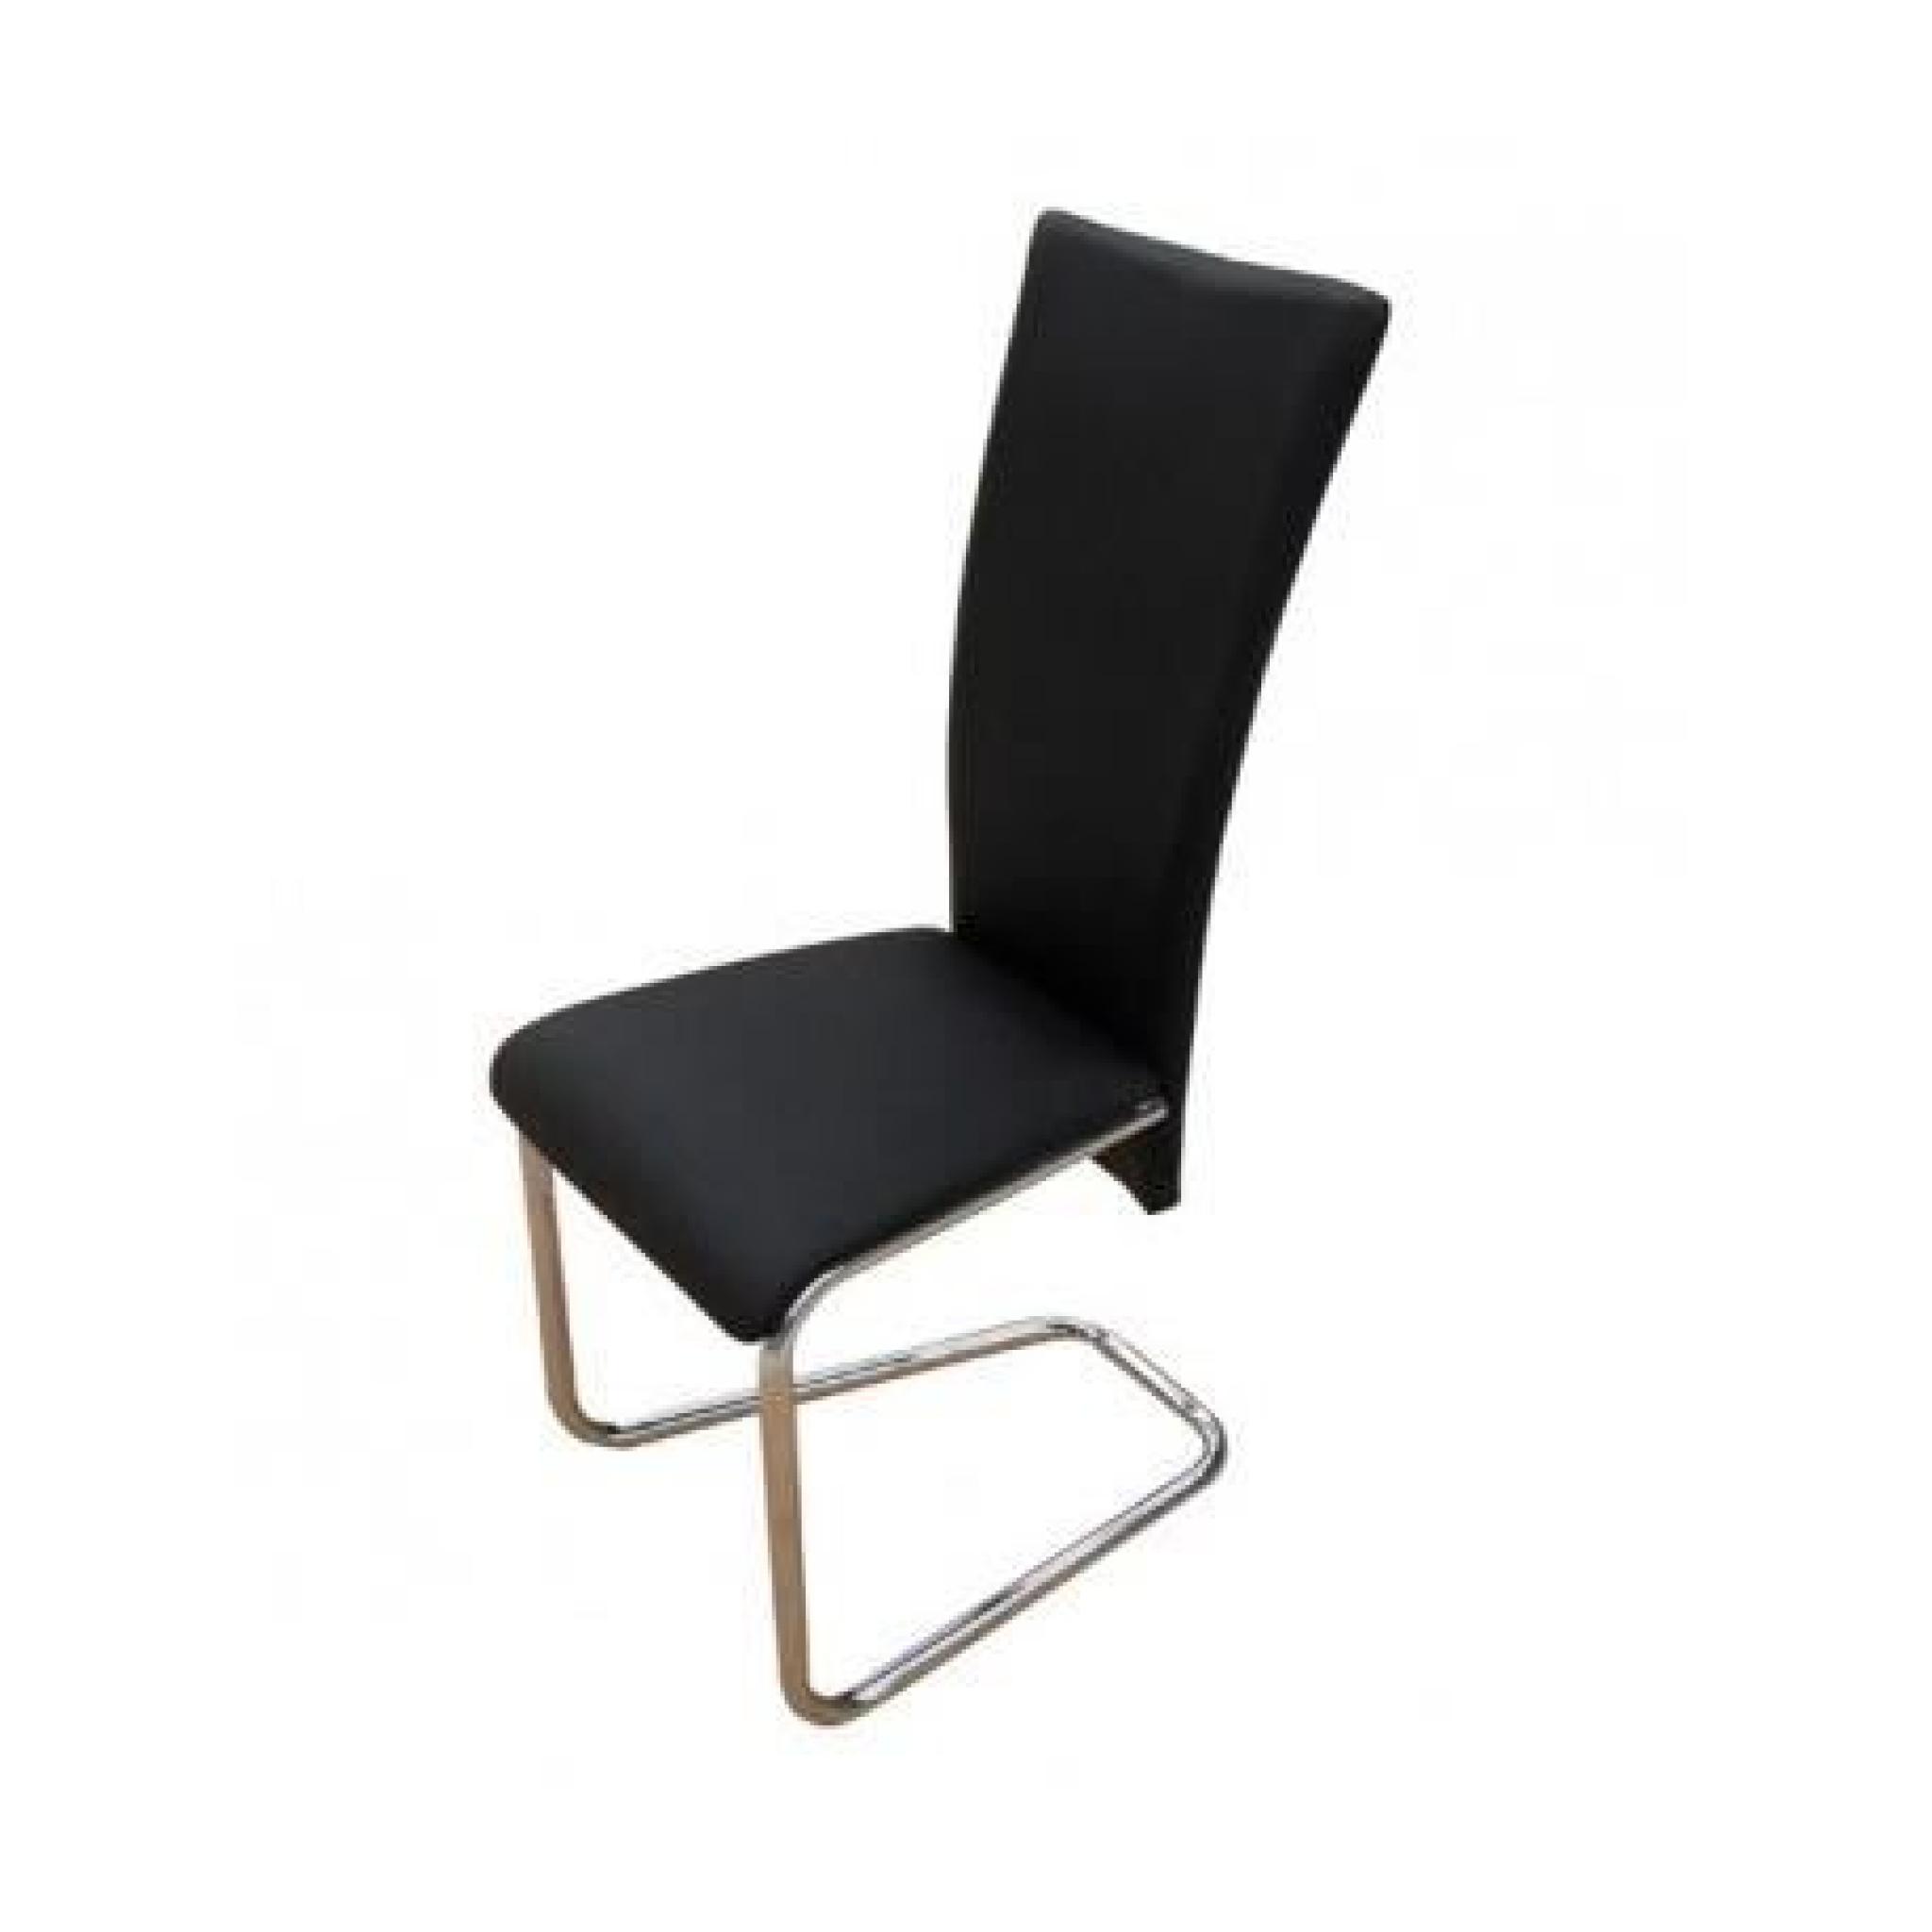 6 Chaises en métal design (Noir) Maja+ pas cher